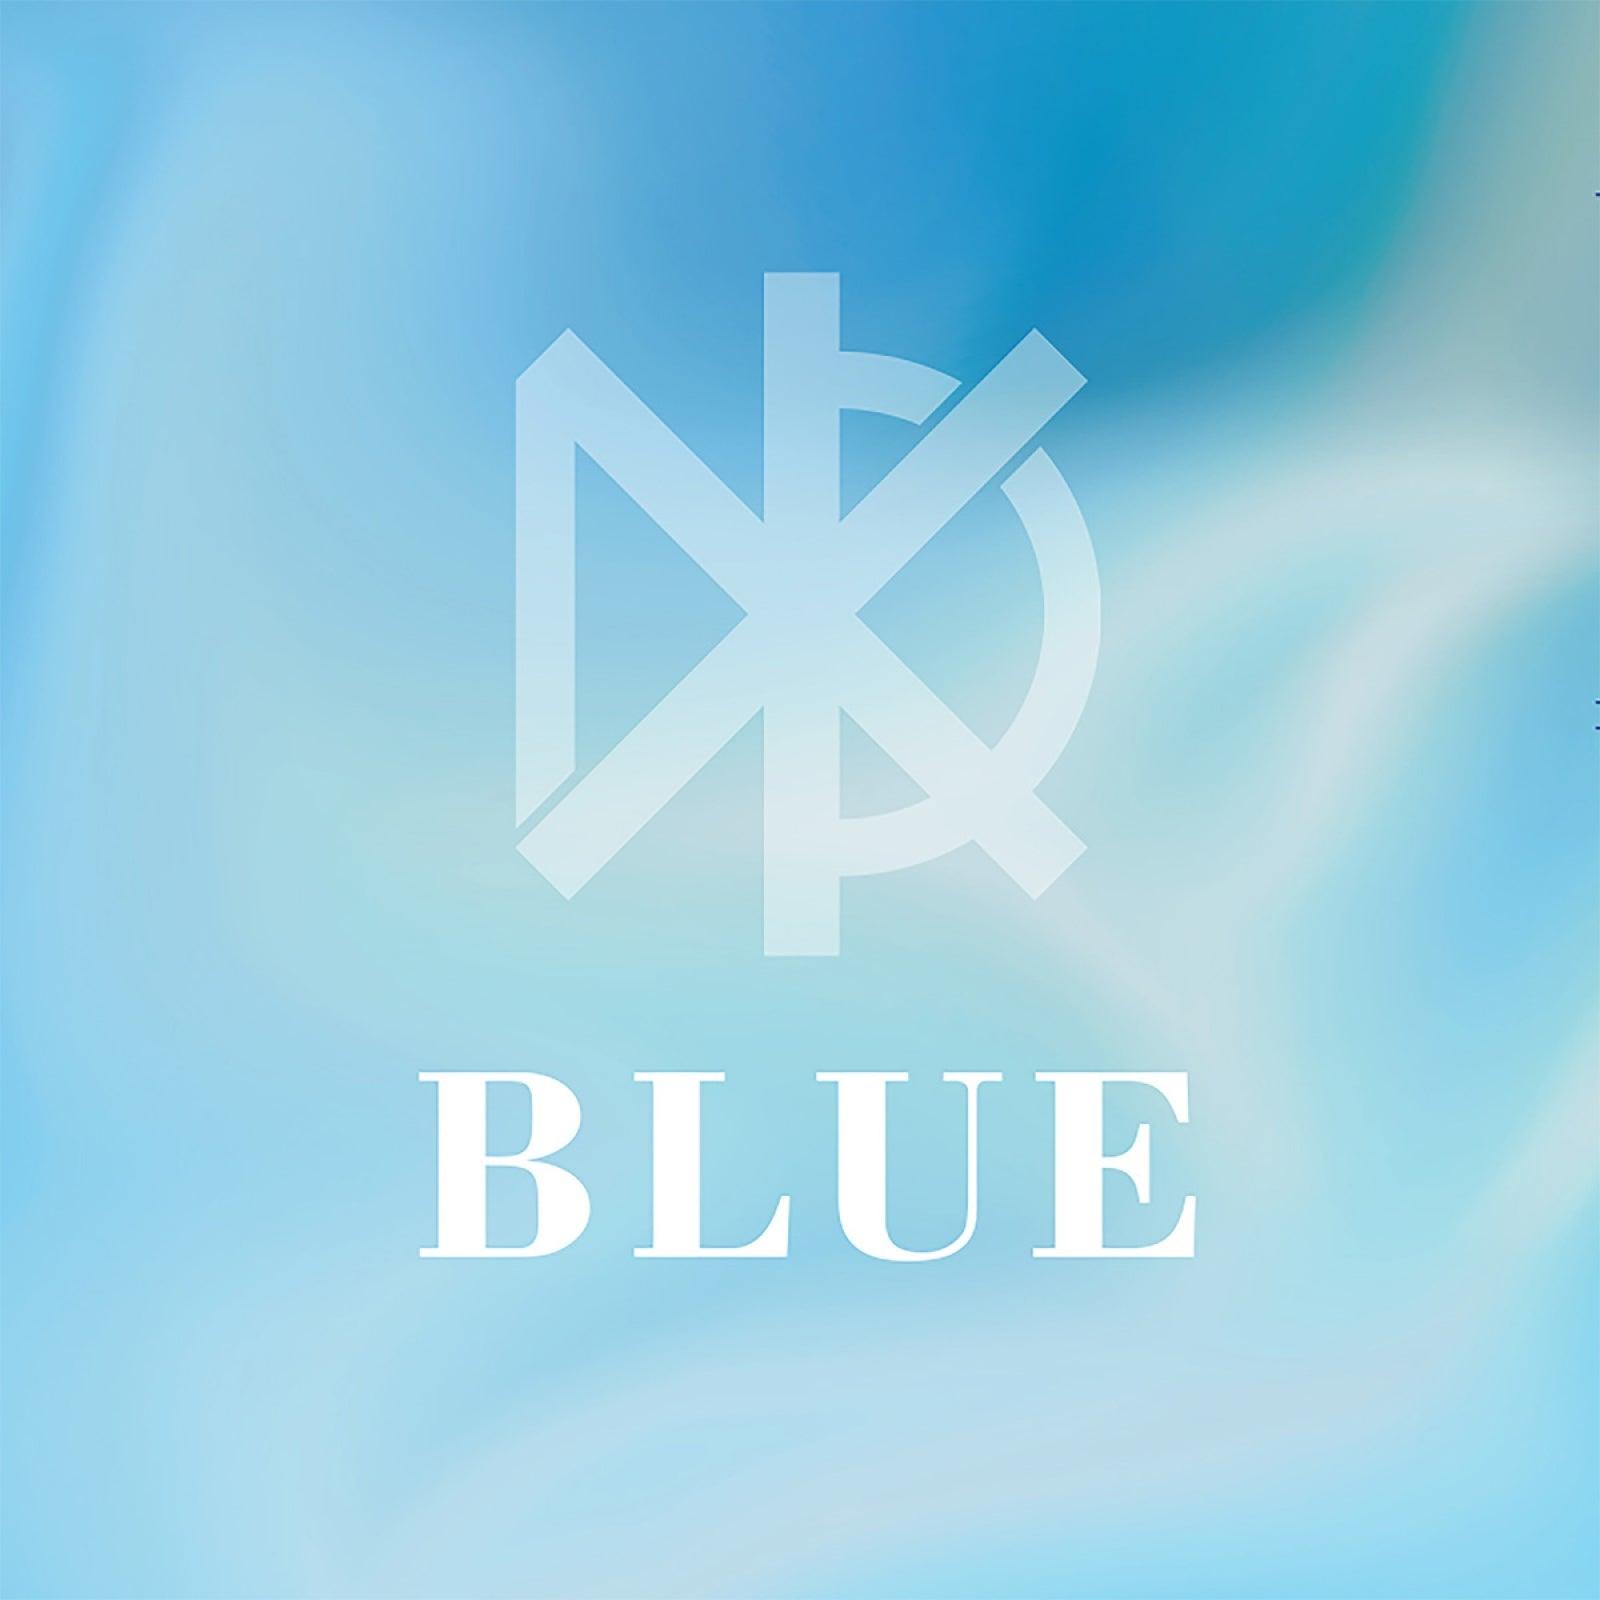 [PRE-ORDER] XEED - BLUE / 2nd MINI ALBUM (SMC ALBUM) - Shopping Around the World with Goodsnjoy